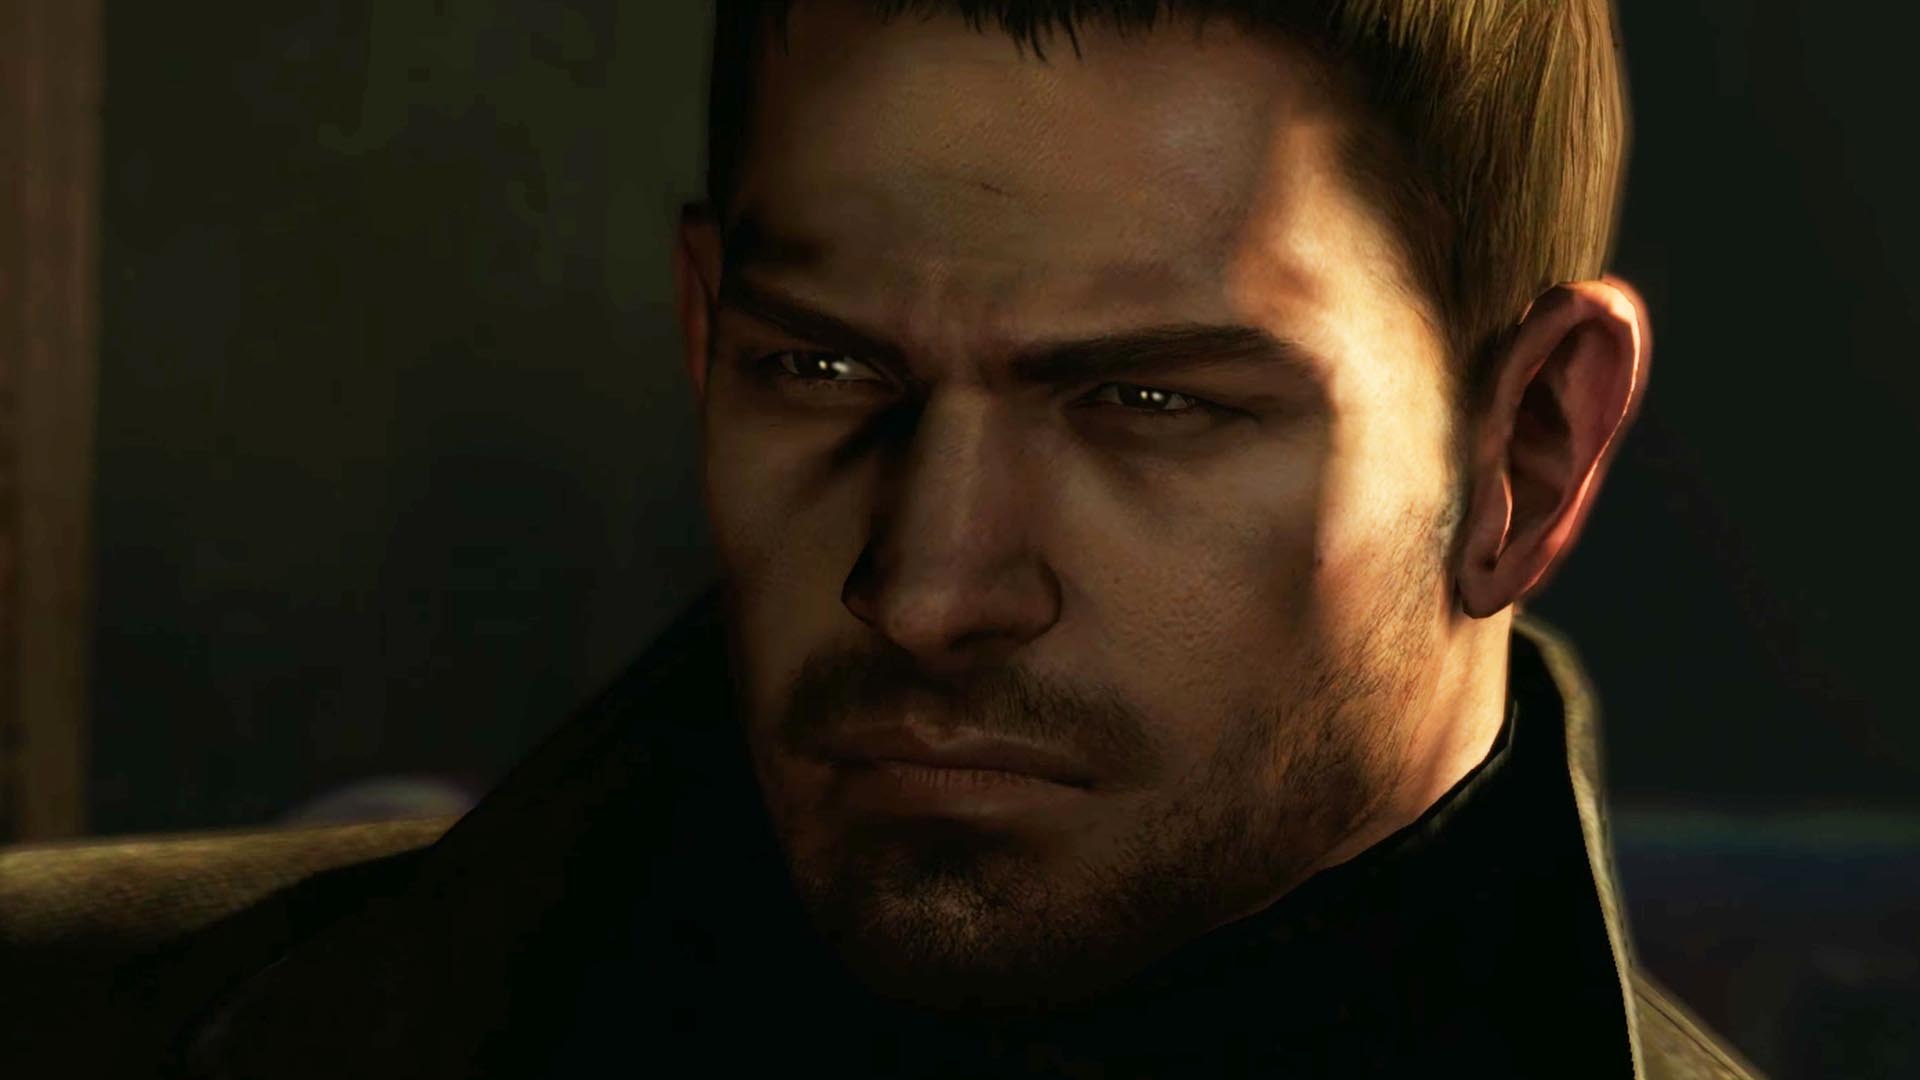 Chris Redfield in Resident Evil 6